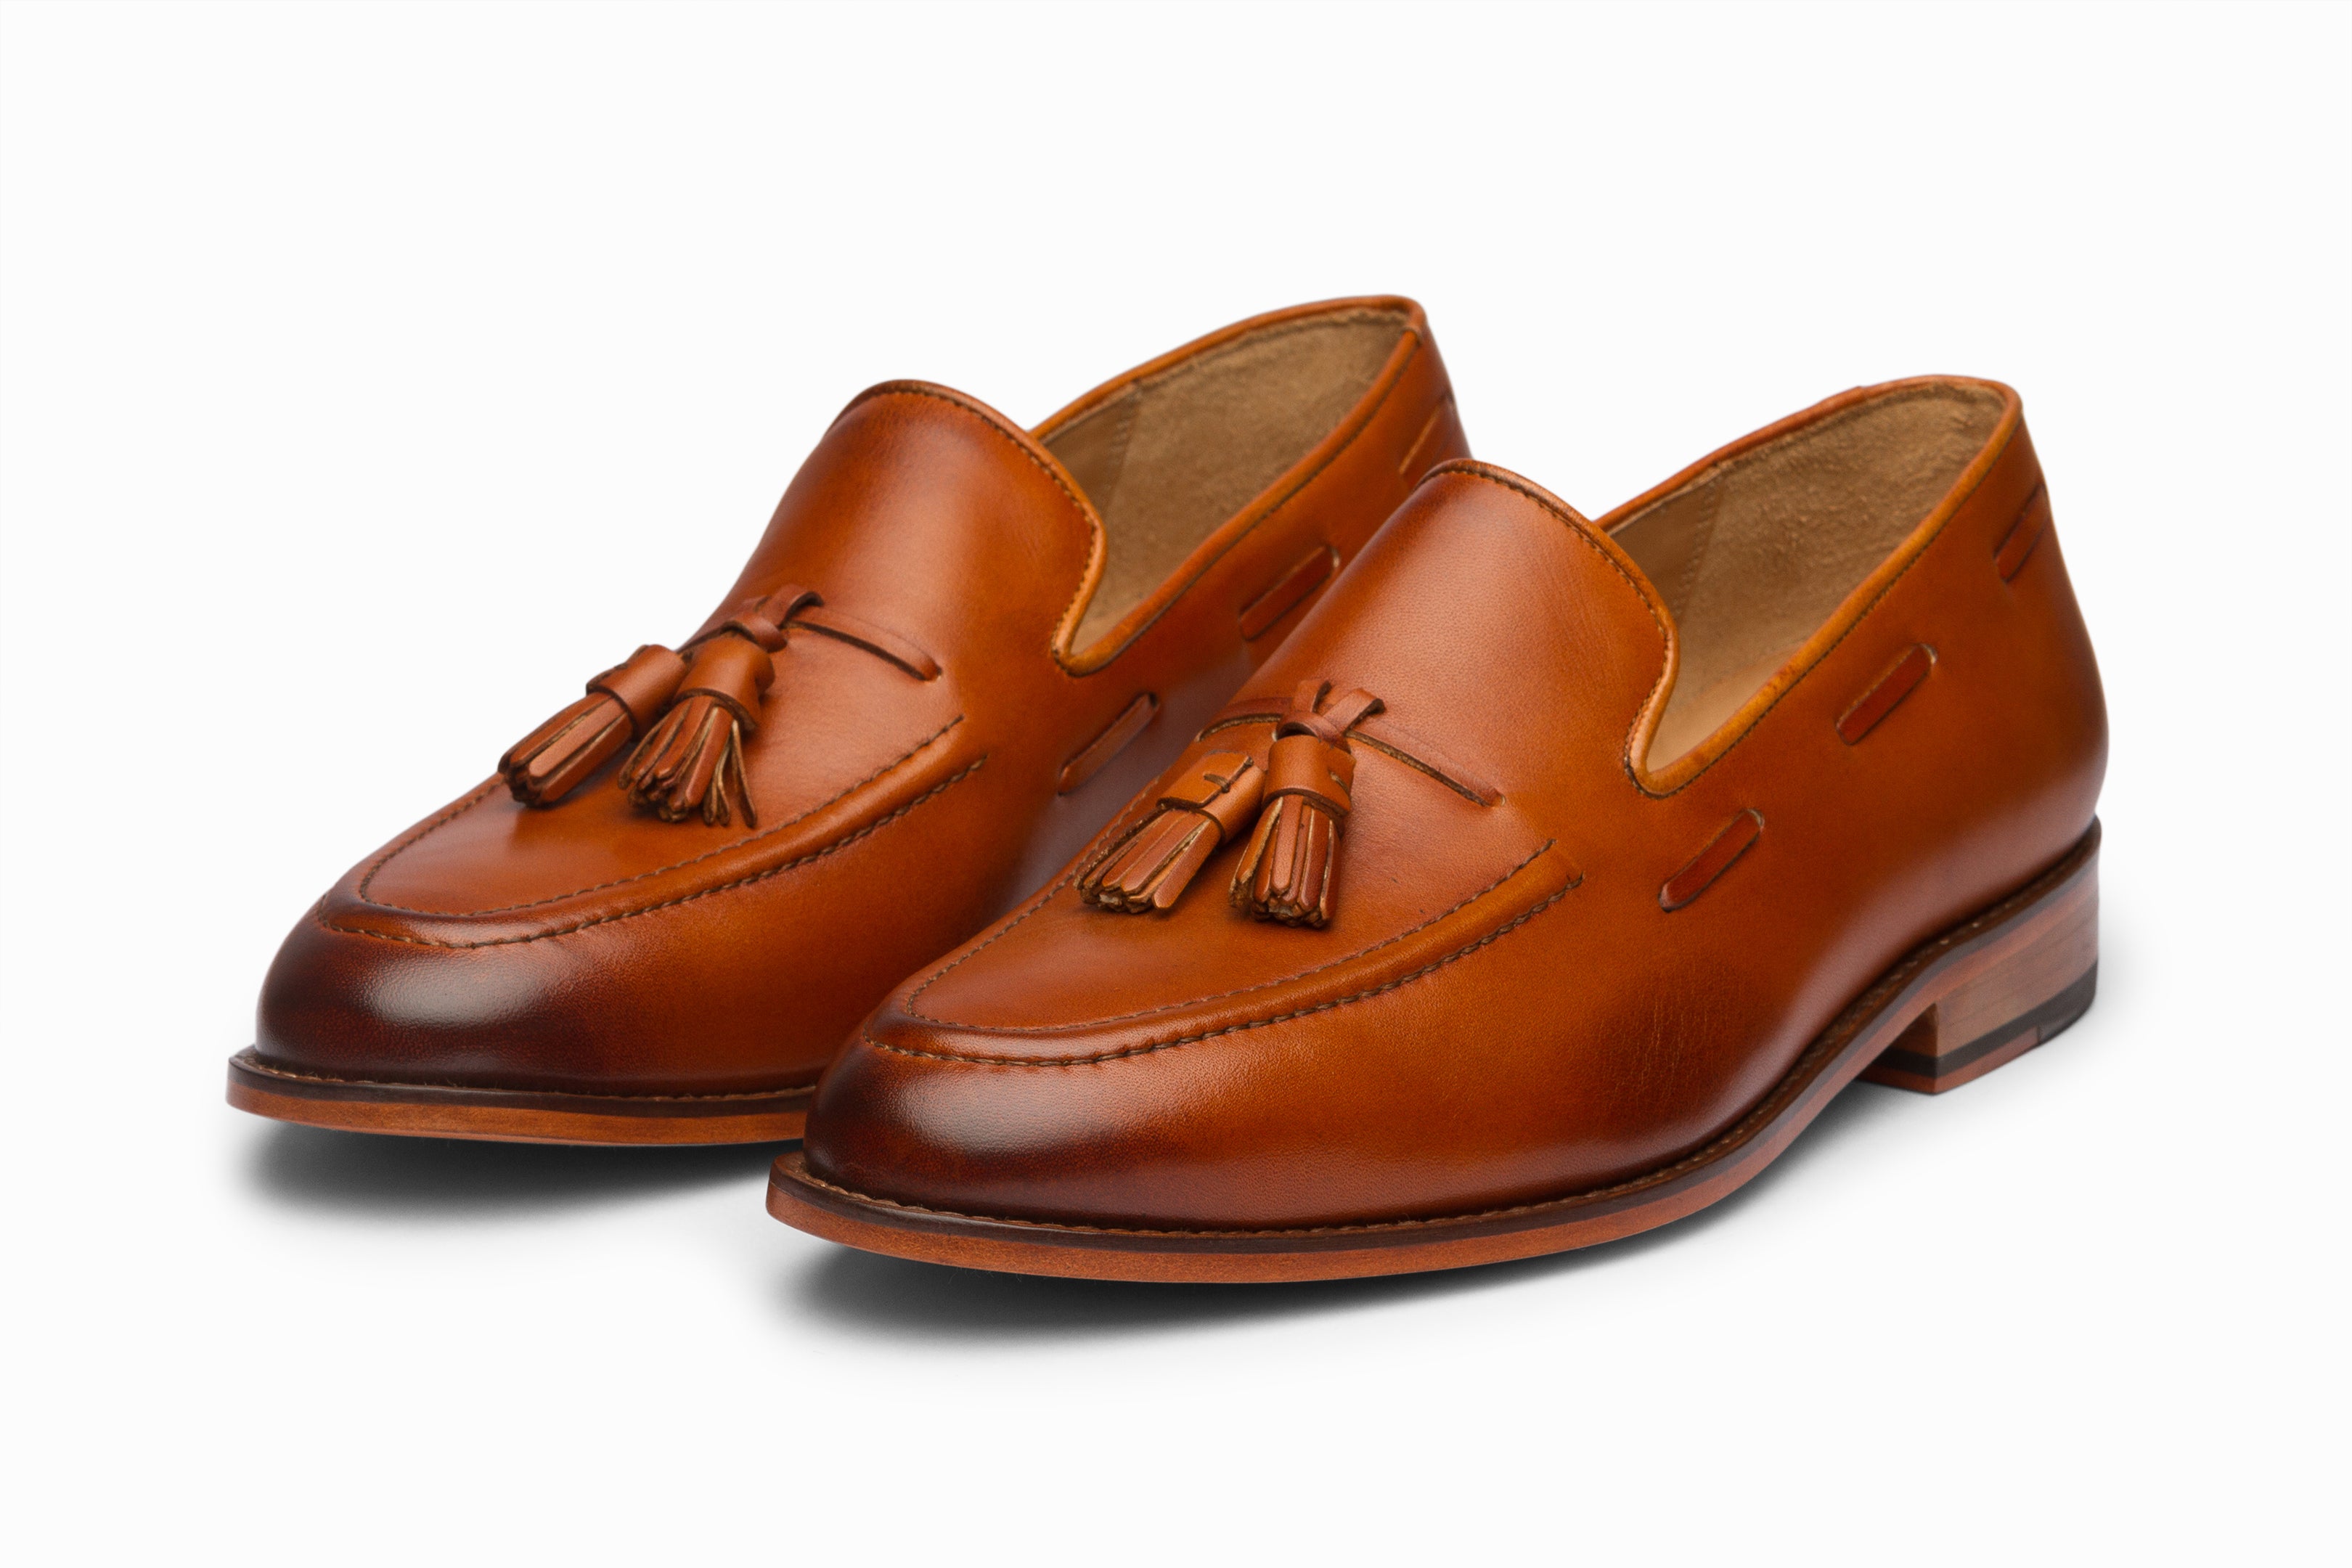 Kilde Afbrydelse mandig Buy Tassel Loafers - Tan colour shoe for men online – 3DM Lifestyle